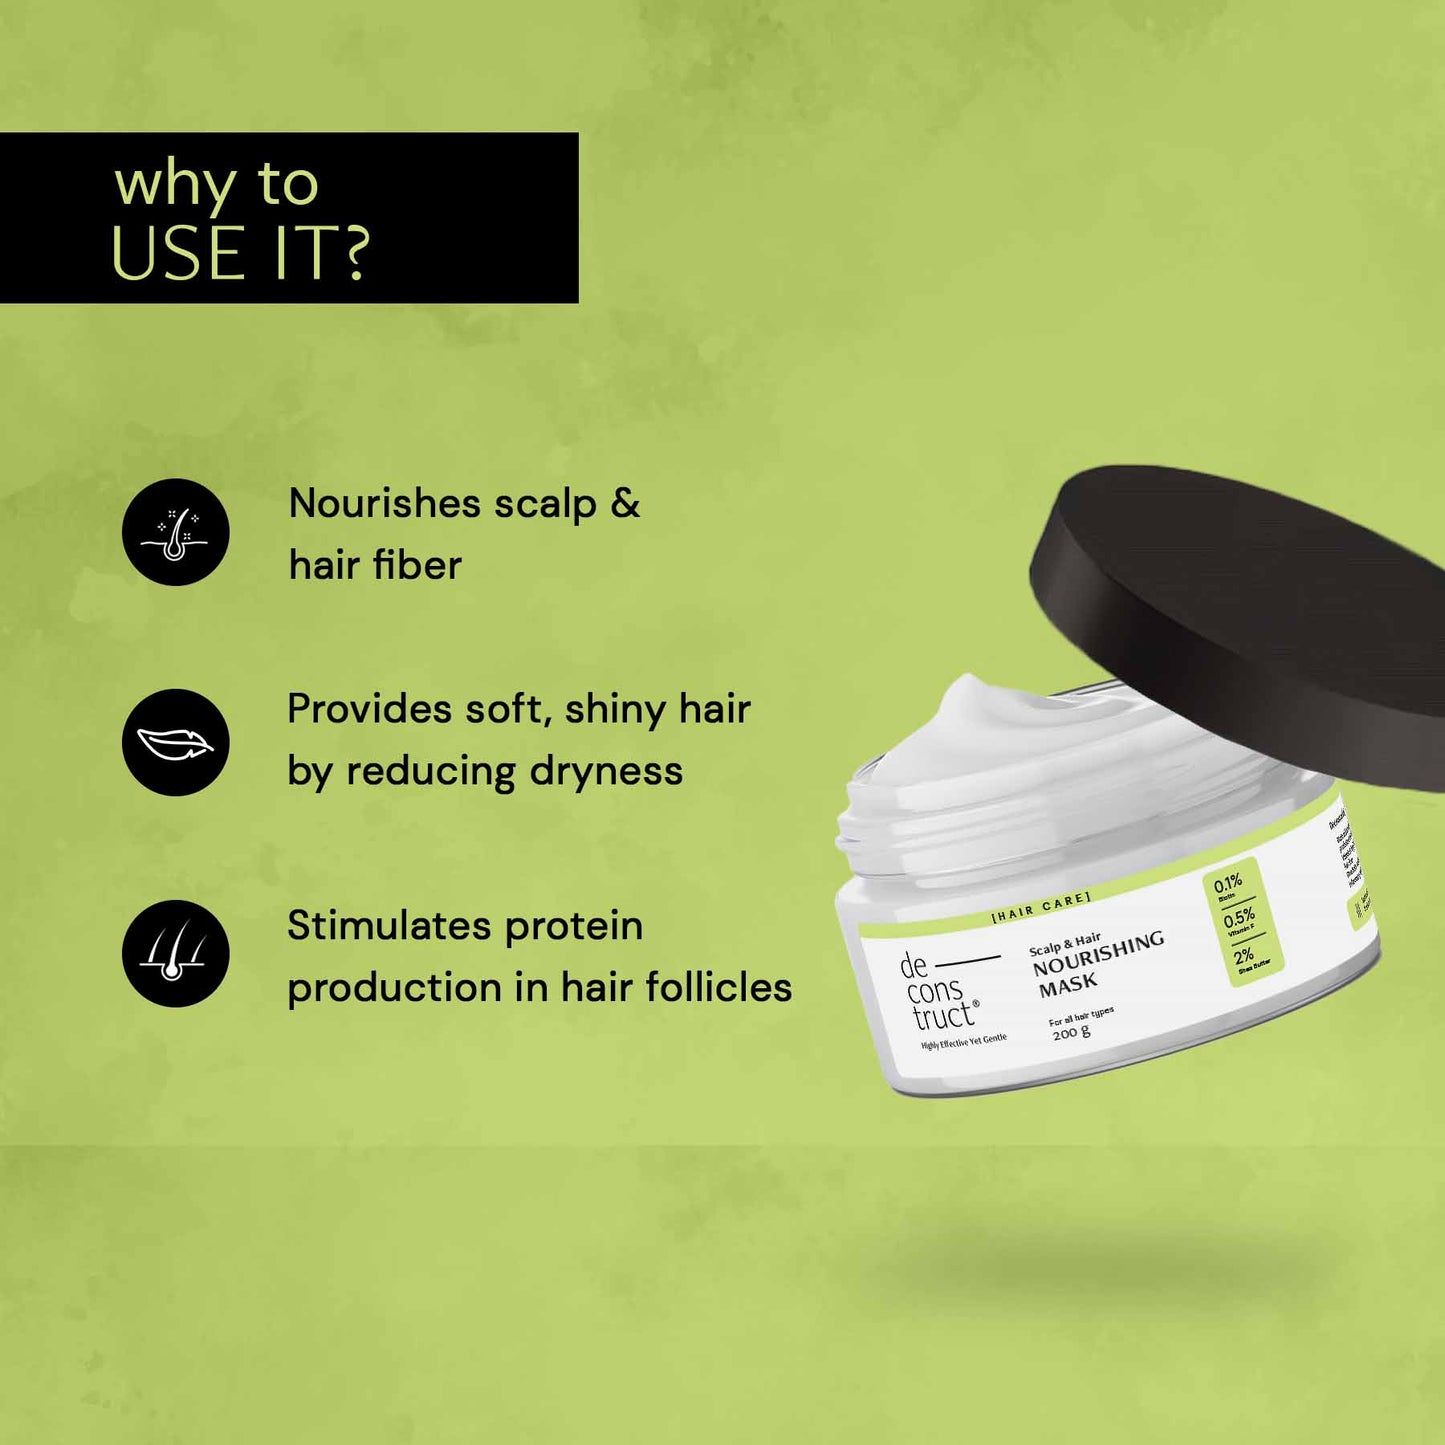 Scalp & Hair Nourishing Mask -  0.1% Biotin + 0.5% Vitamin F + 2% Shea Butter